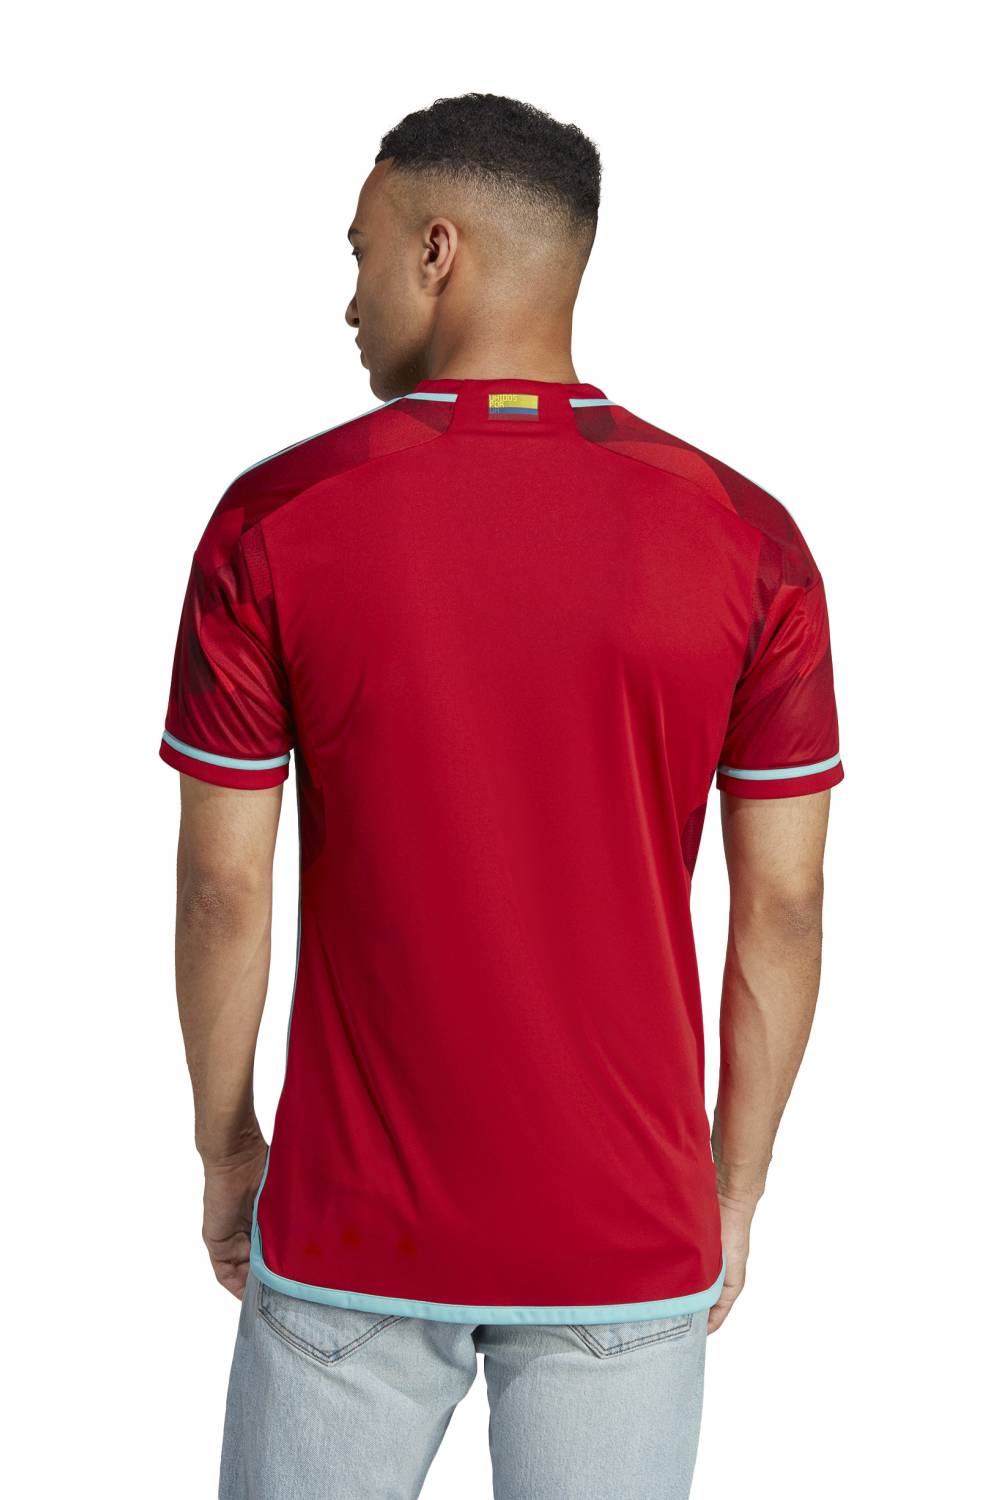 ADIDAS - Camiseta De Fútbol Colombia Entrenamiento Hombre Adidas